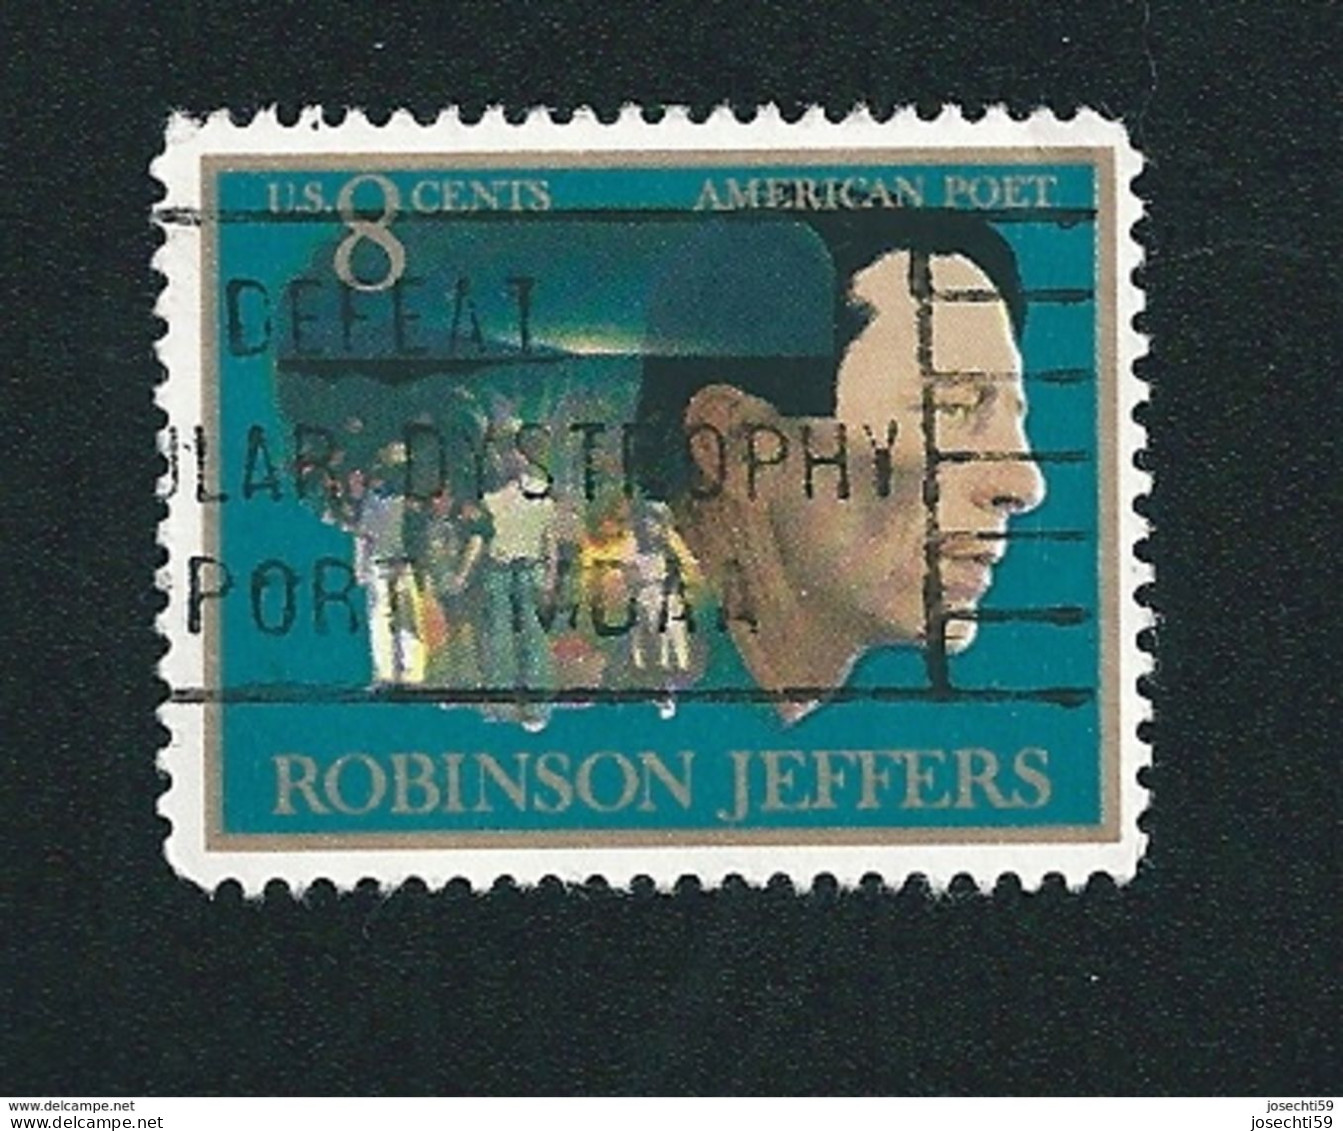 N° 1002 John Robinson Jeffers (1887-1962), American Poet   Timbre Etats-Unis (1973)   Oblitéré - Oblitérés